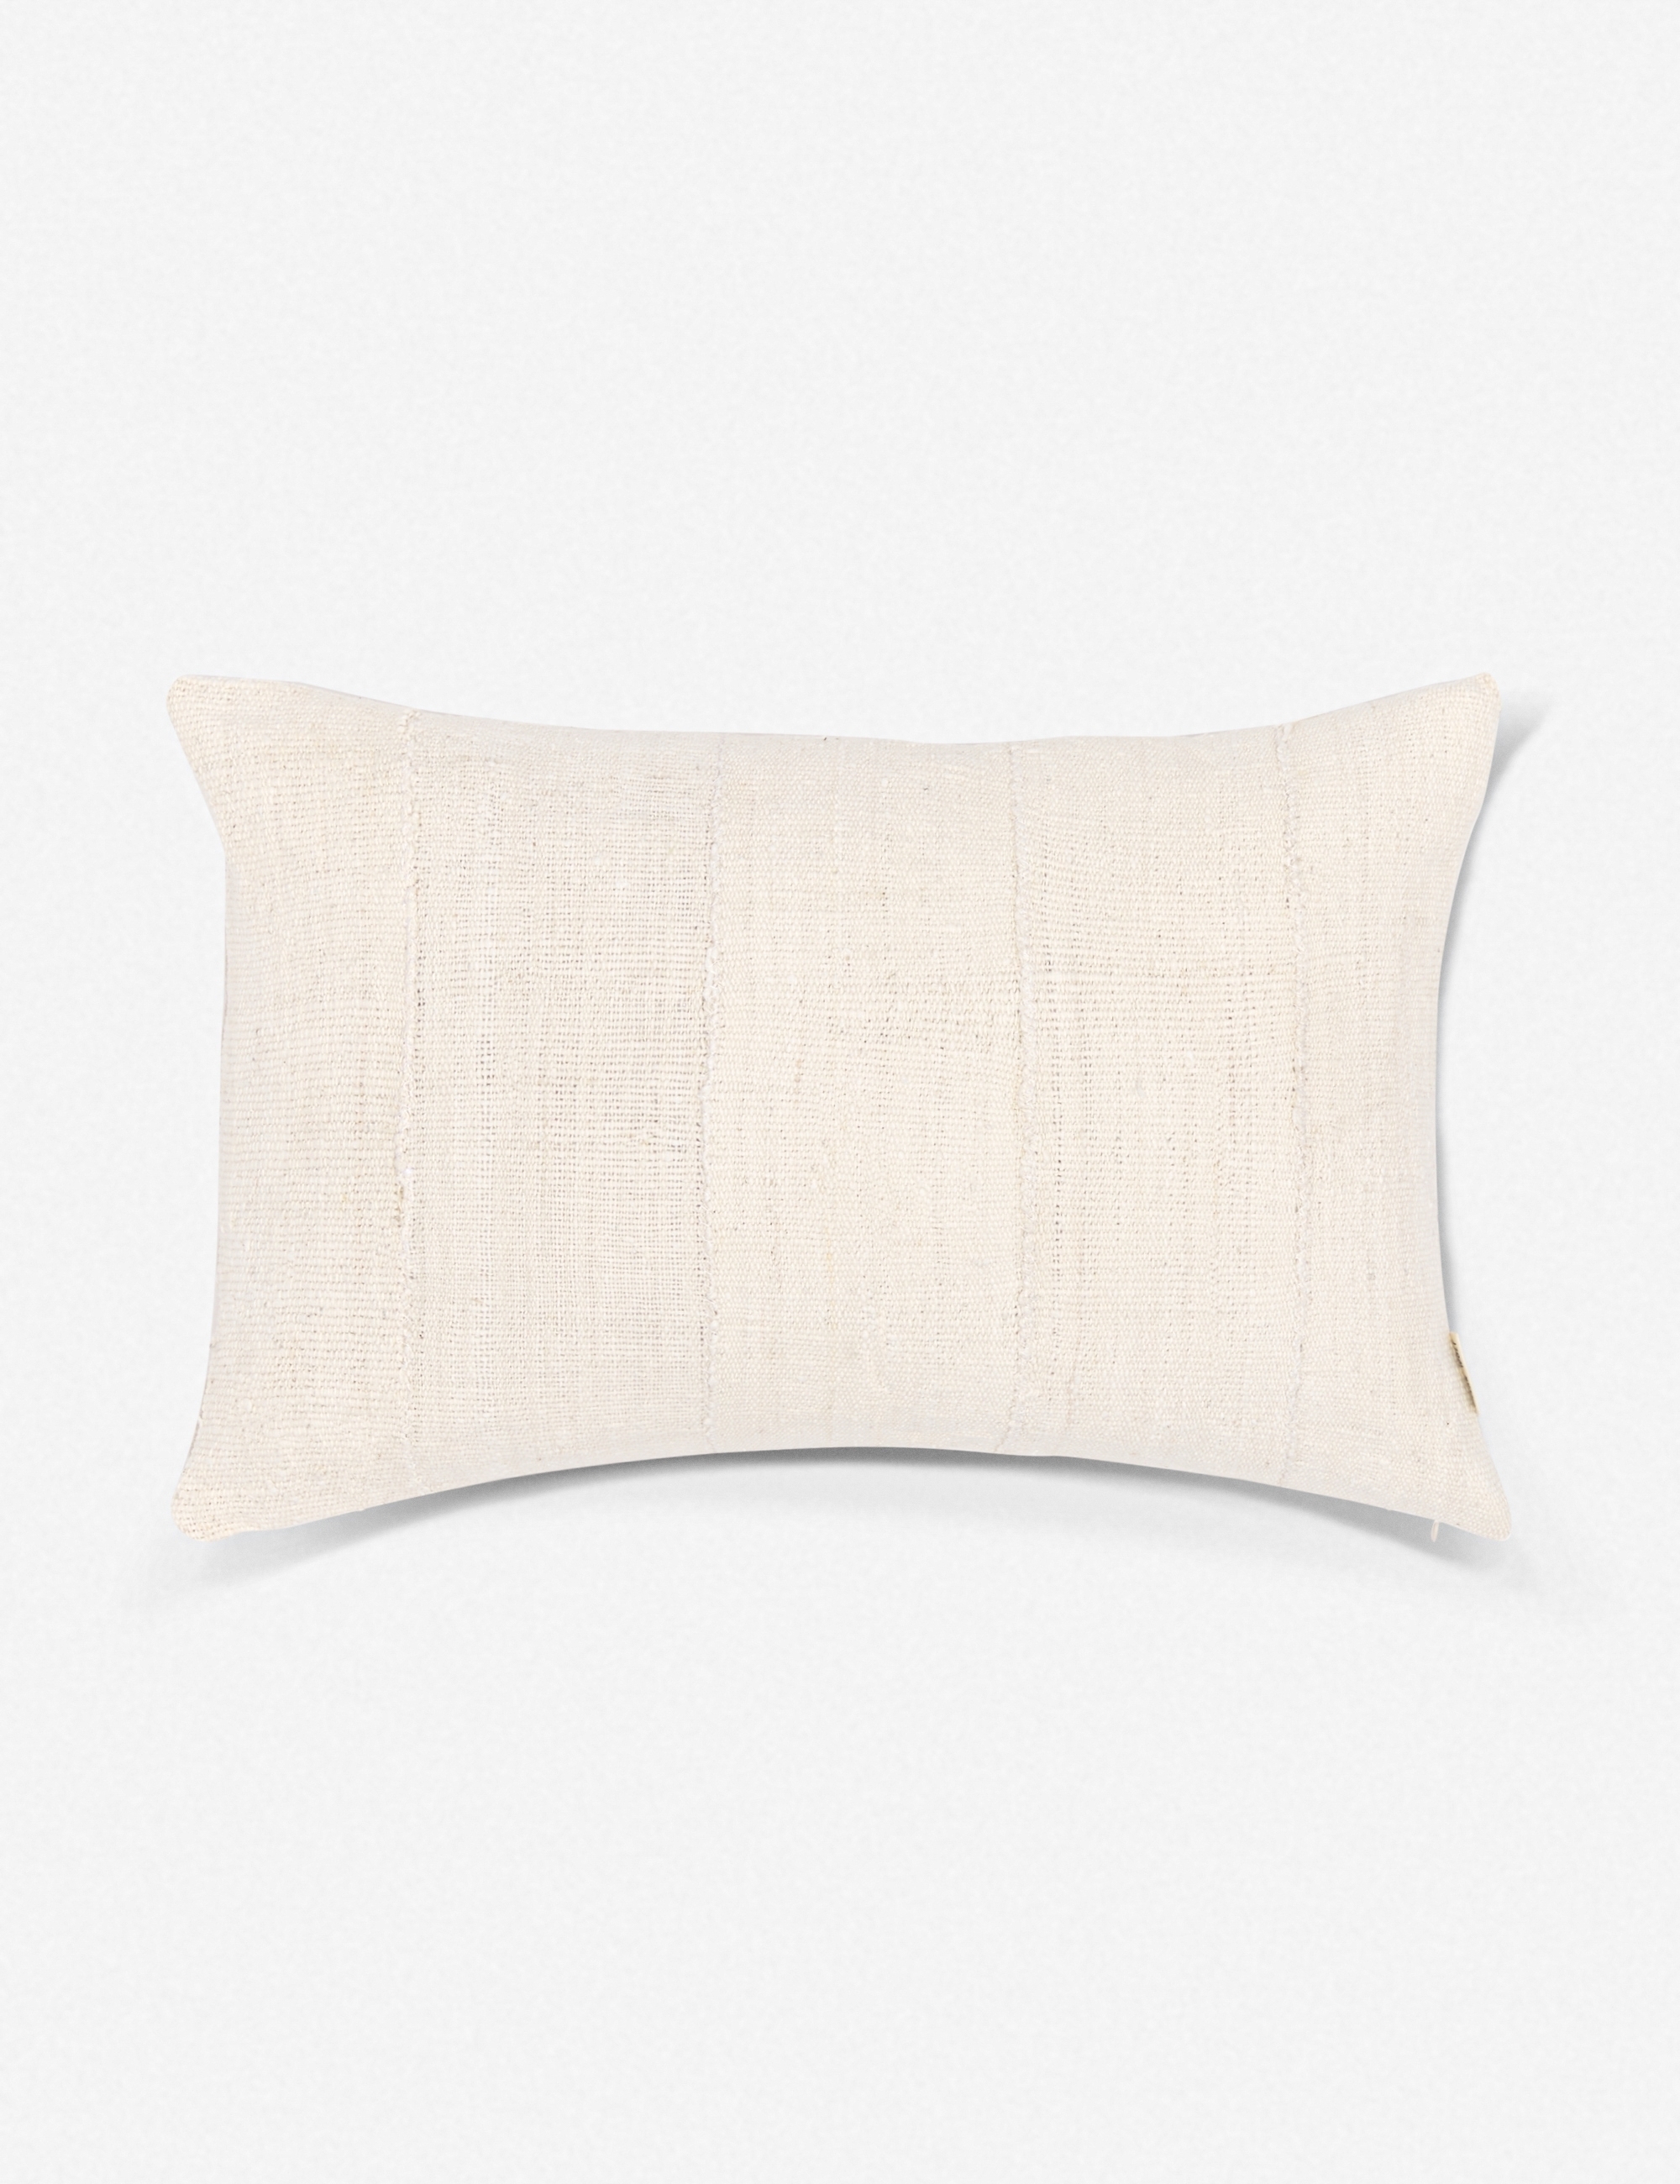 Norala Mudcloth Lumbar Pillow - Image 0